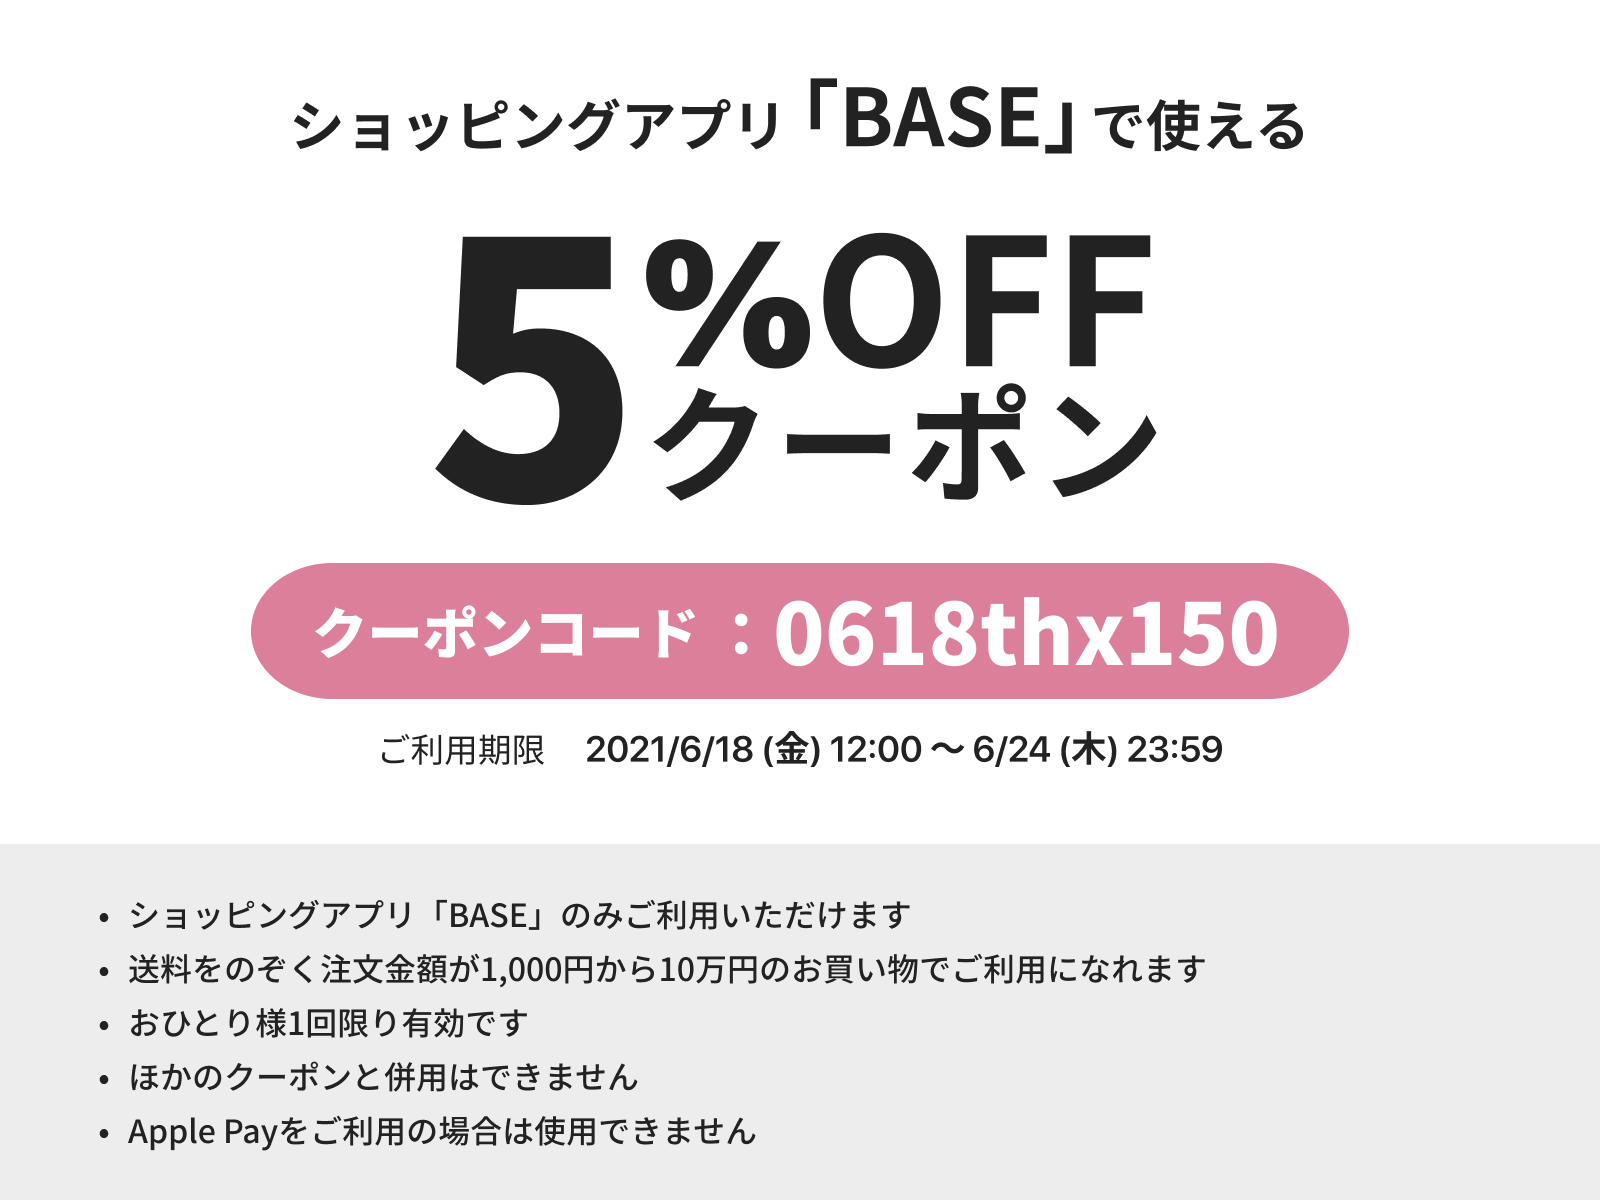 またまた「BASE」アプリからのご購入で5%OFFクーポンがご利用いただけます！